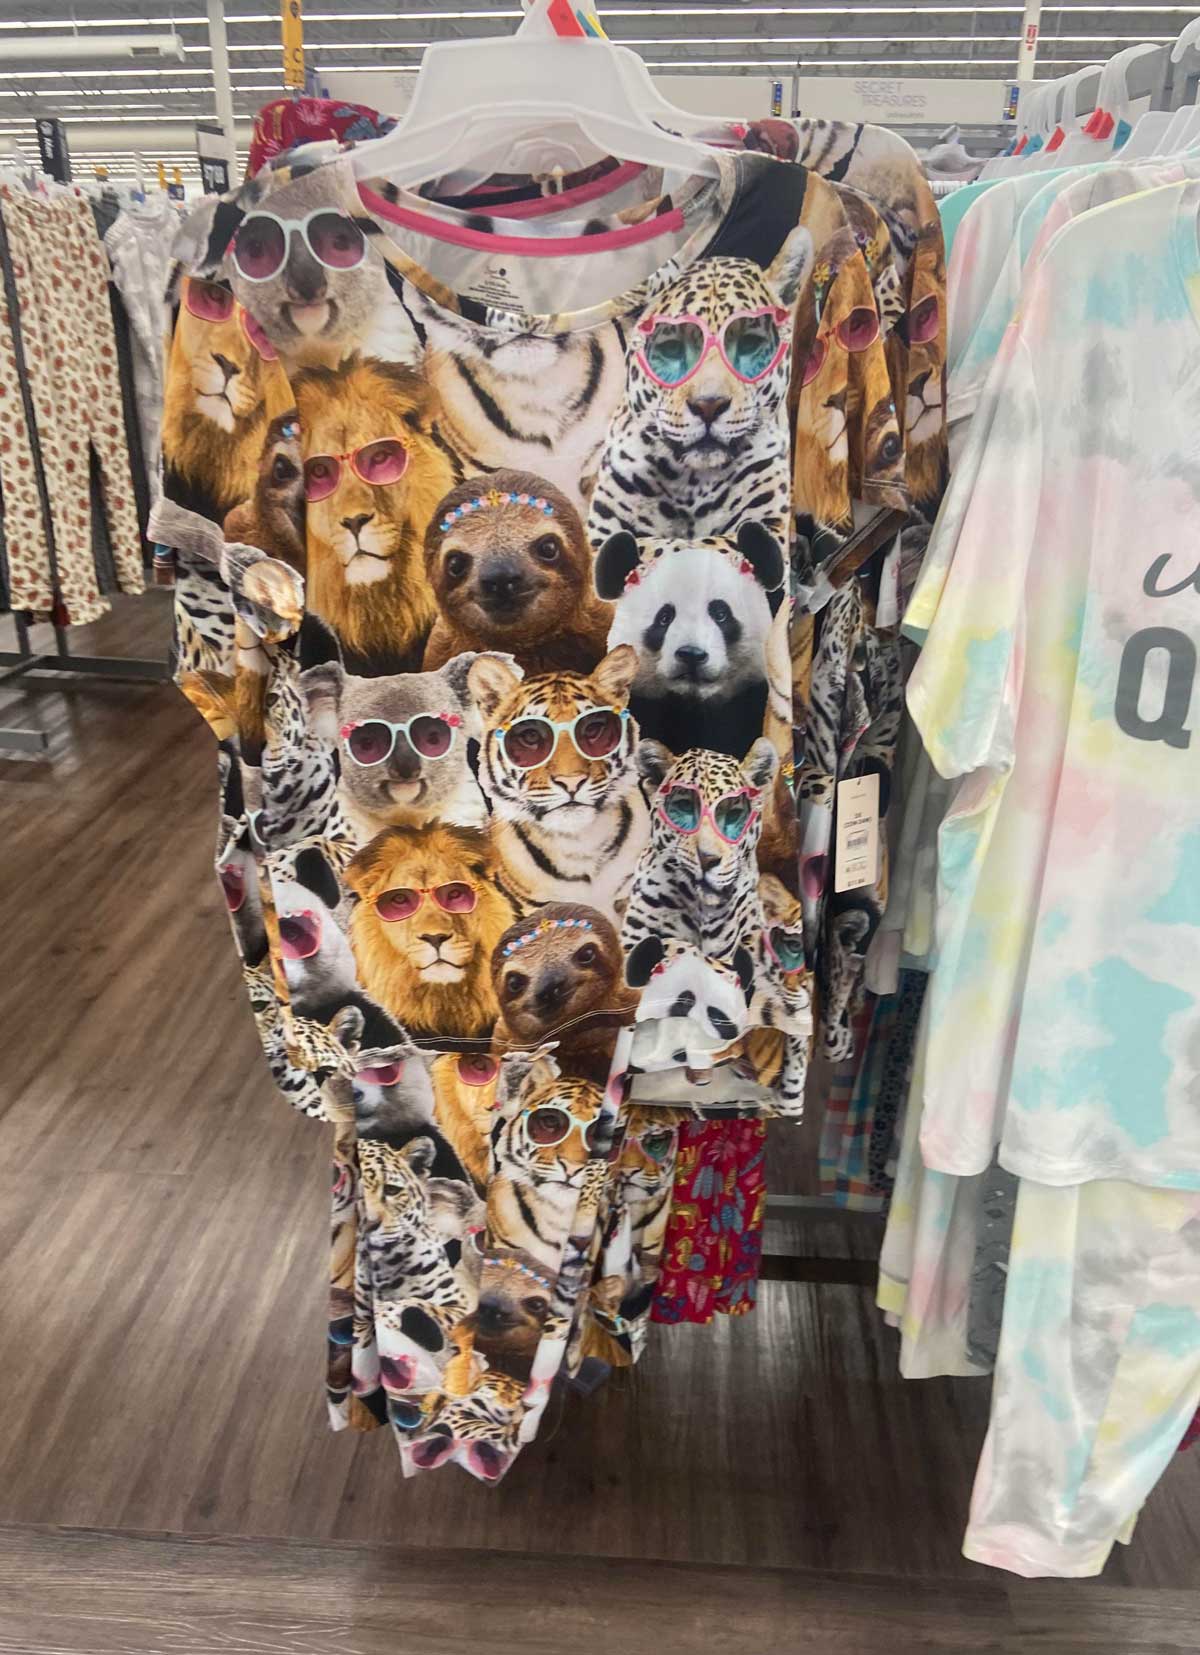 Found this at Walmart